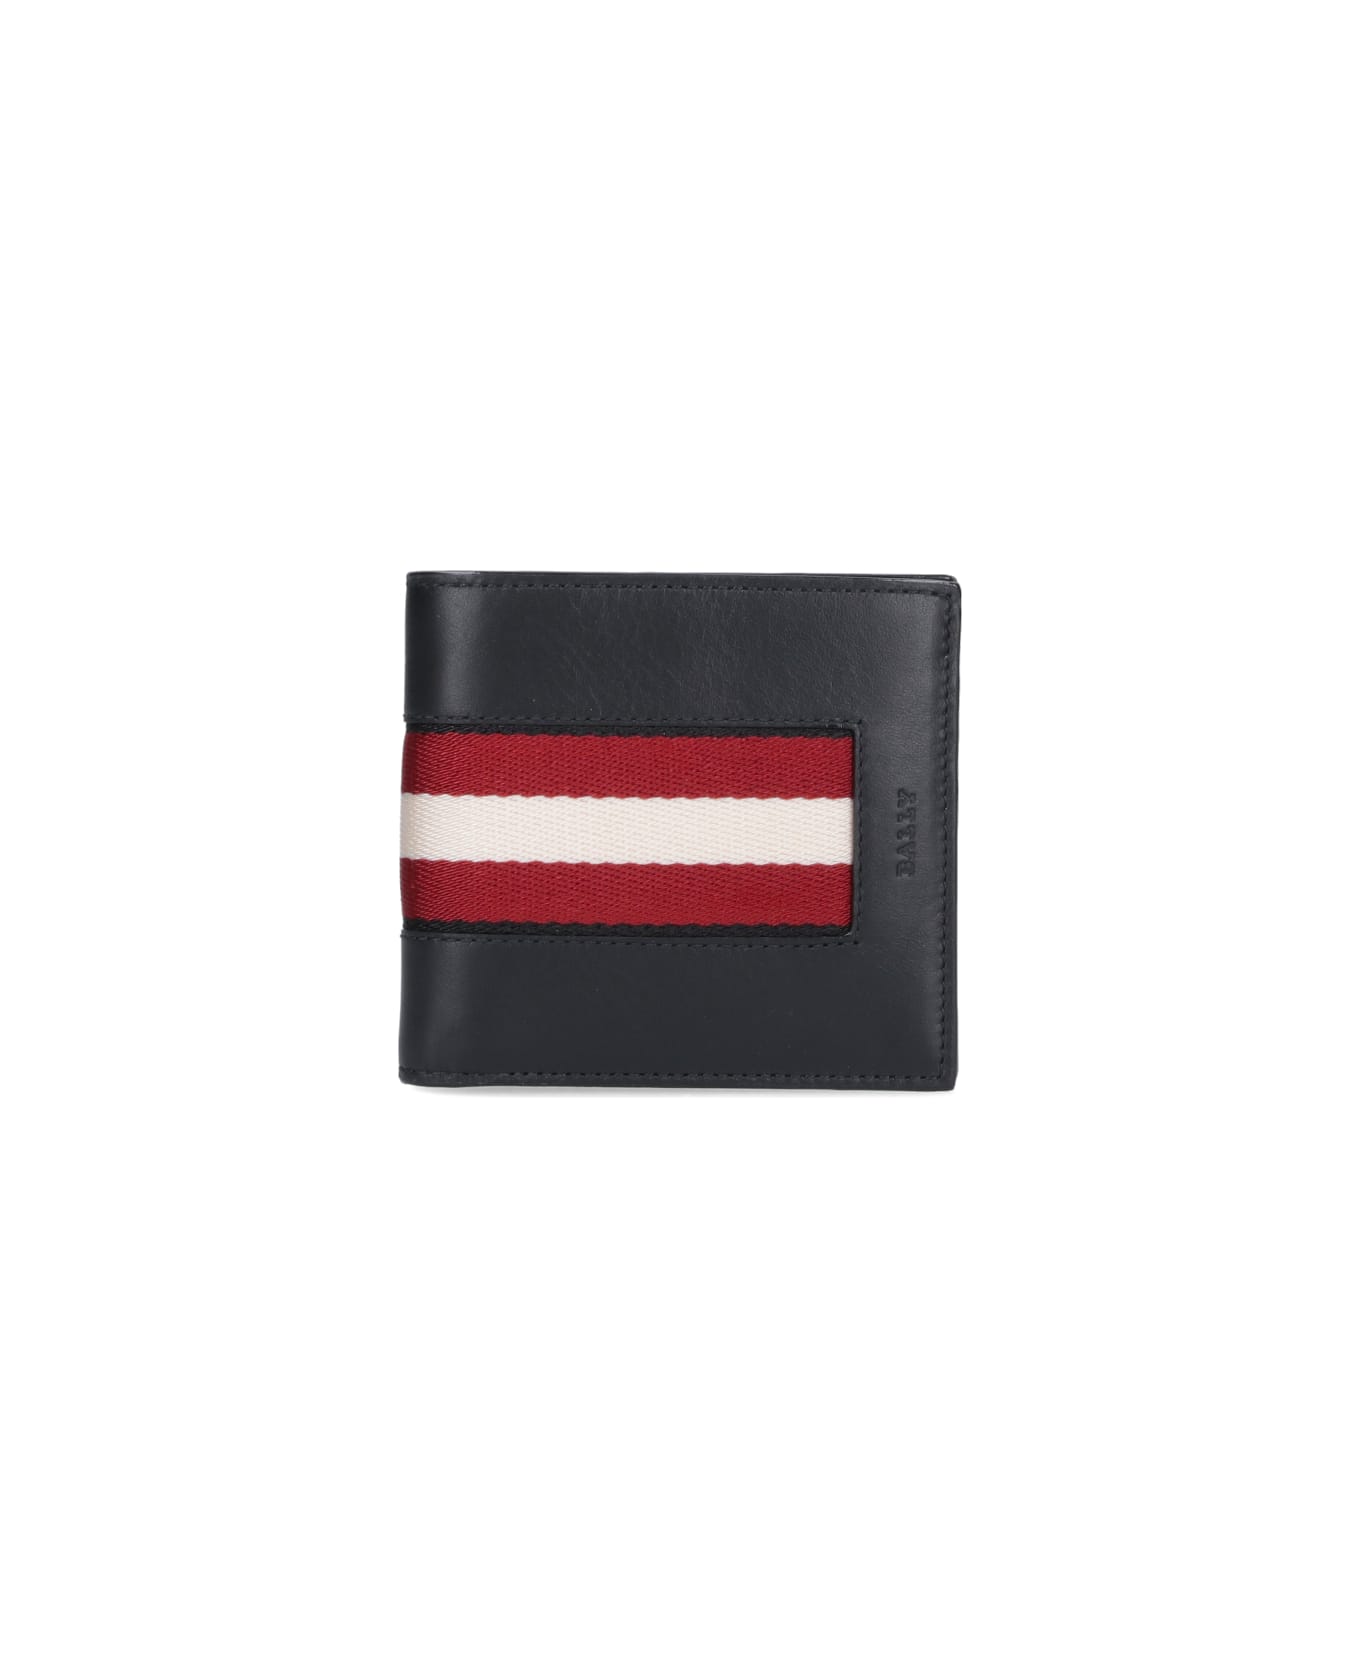 Bally Bi-fold Wallet "brasai" - Black  